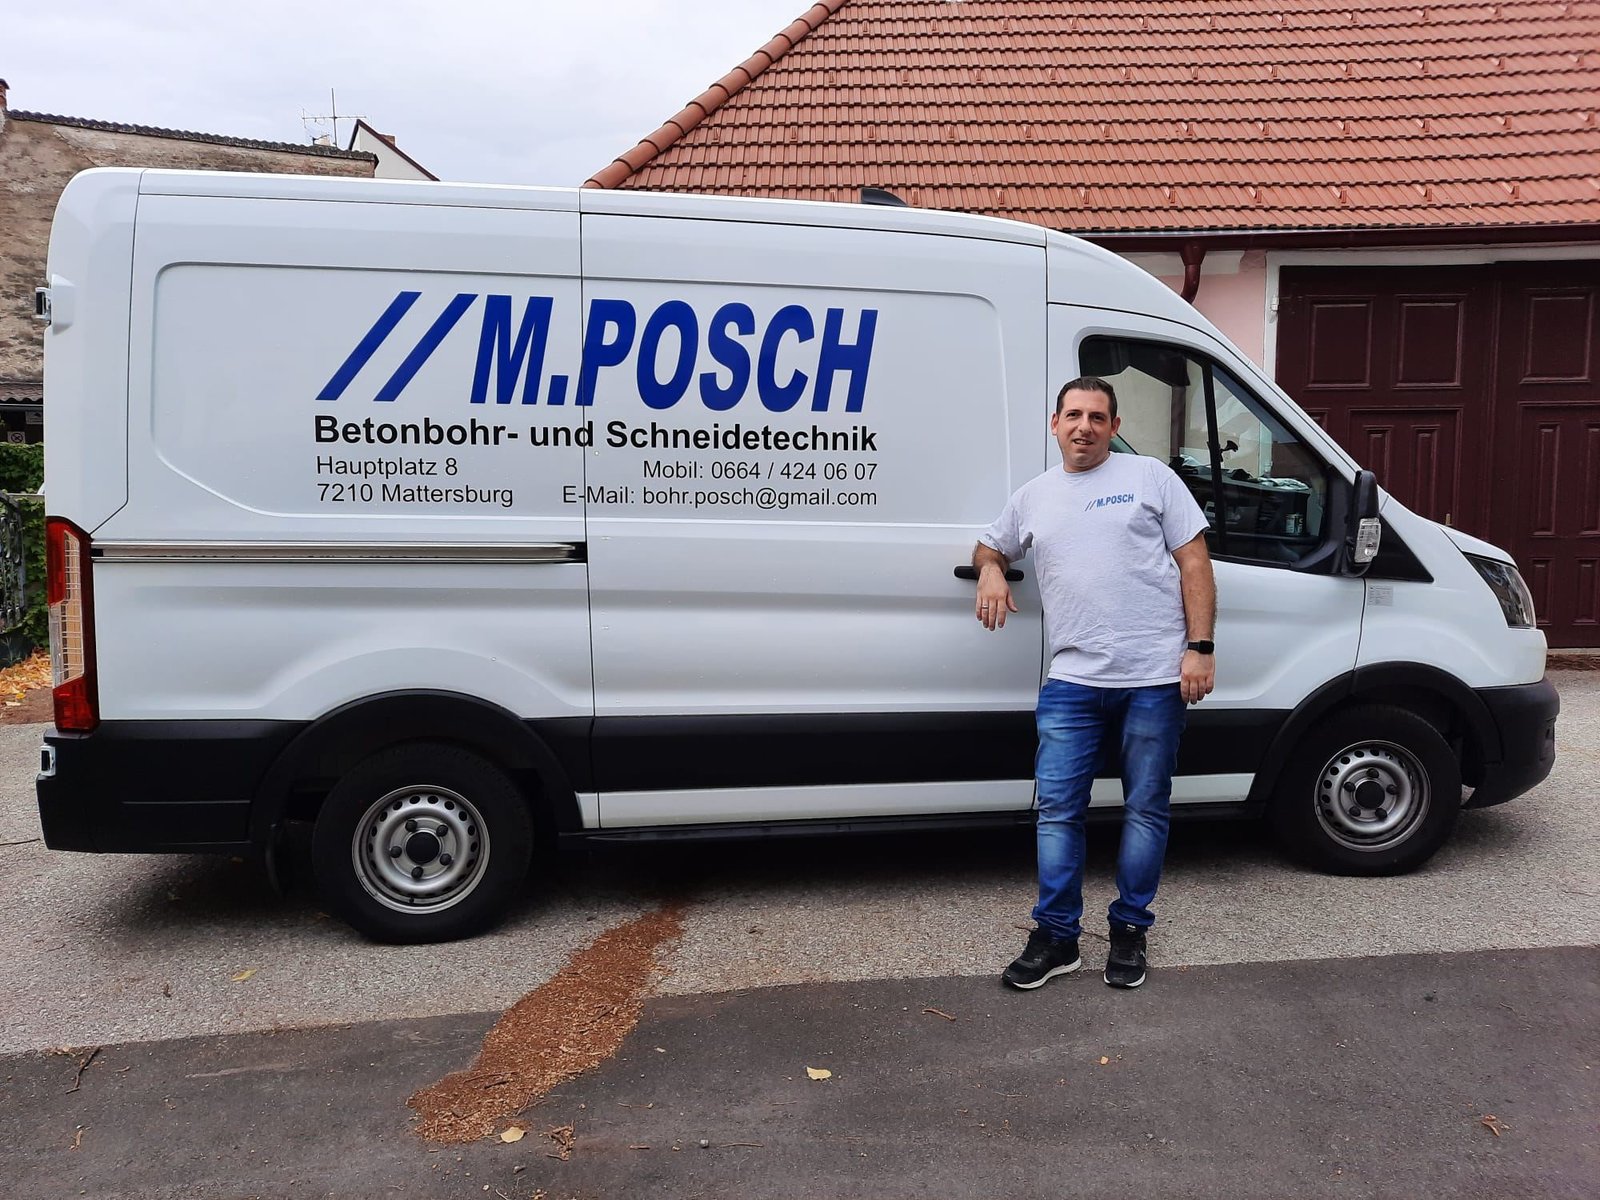 Firmenauto M.Posch Betonbohr- und Schneidetechnik in Mattersburg